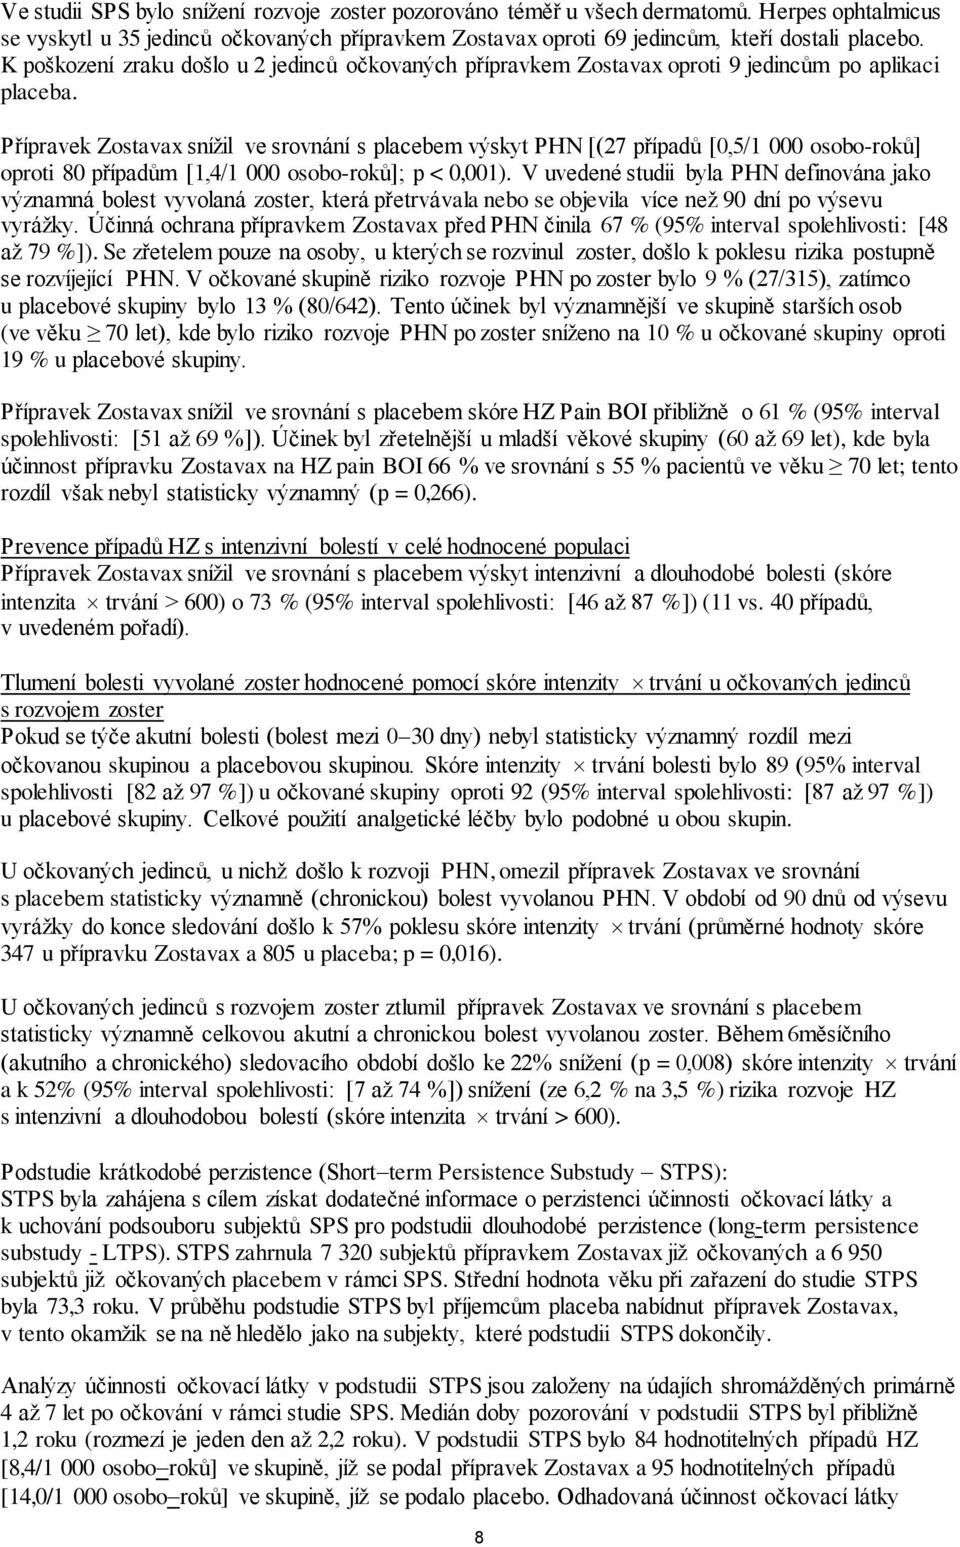 Přípravek Zostavax snížil ve srovnání s placebem výskyt PHN [(27 případů [0,5/1 000 osobo-roků] oproti 80 případům [1,4/1 000 osobo-roků]; p < 0,001).